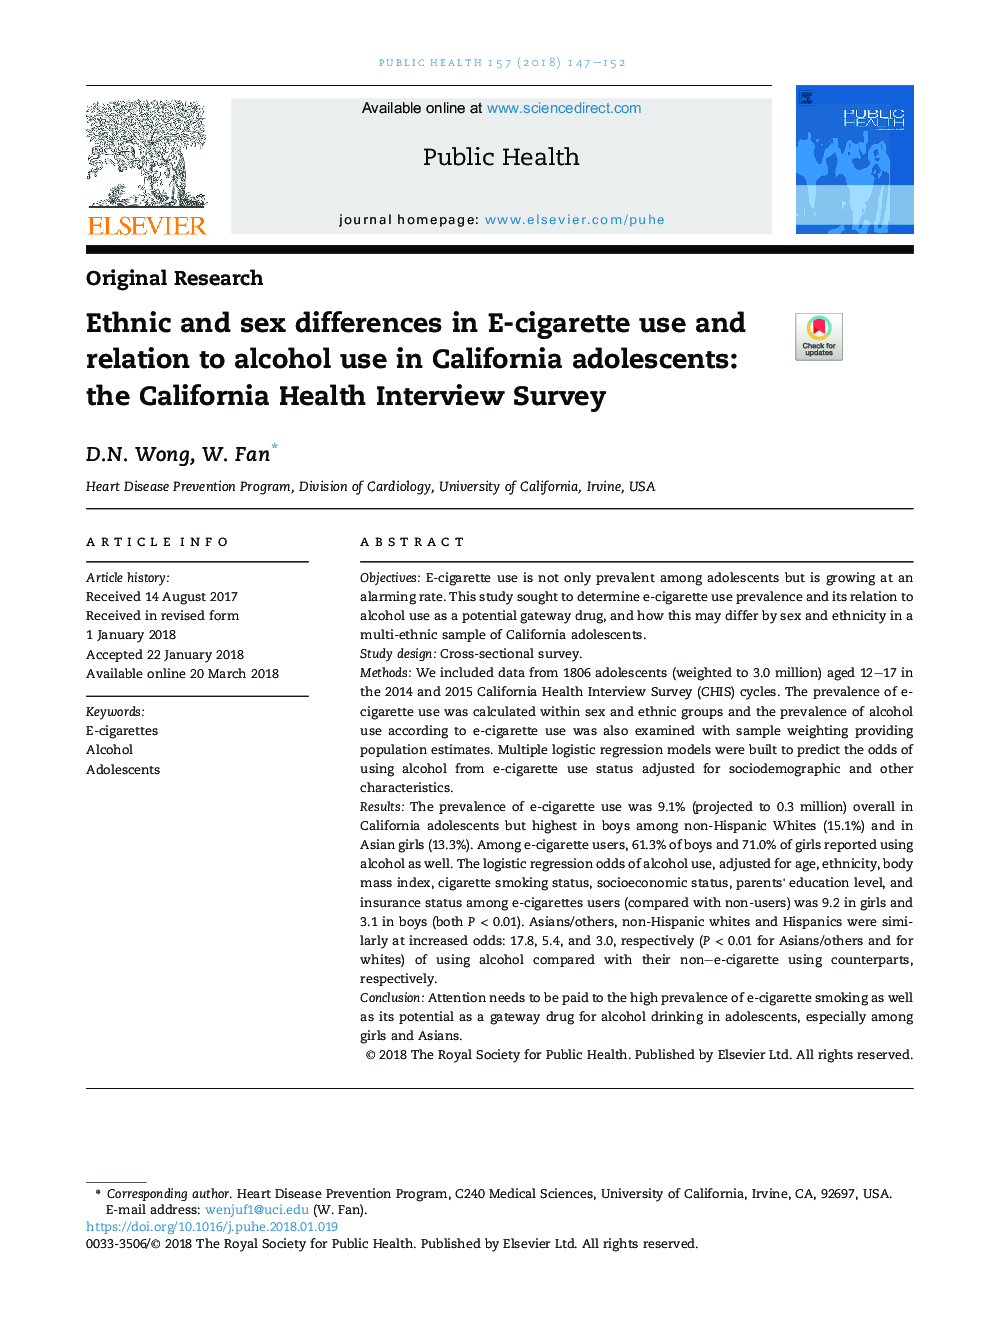 اختلافات قومی و جنسی در استفاده از سیگار الکترونیکی و ارتباط با مصرف الکل در نوجوانان کالیفرنیا: نظرسنجی مصاحبه بهداشت کالیفرنیا 